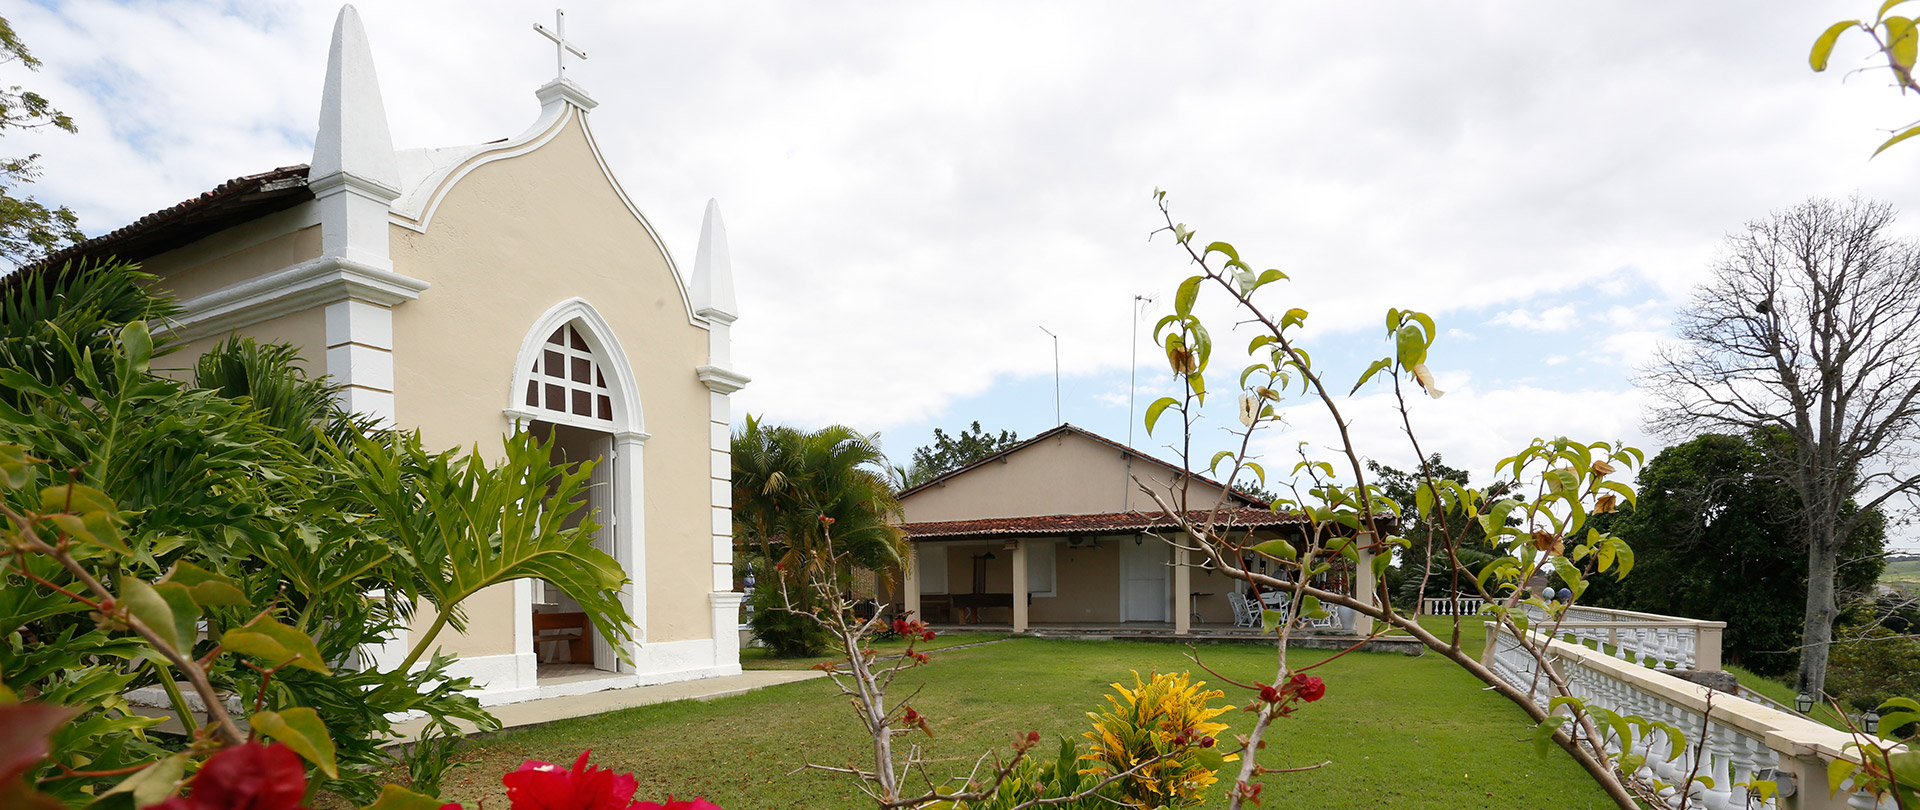 Capela de São Bernardo ao lado do casarão do engenho, na Zona da Mata Norte de Pernambuco
